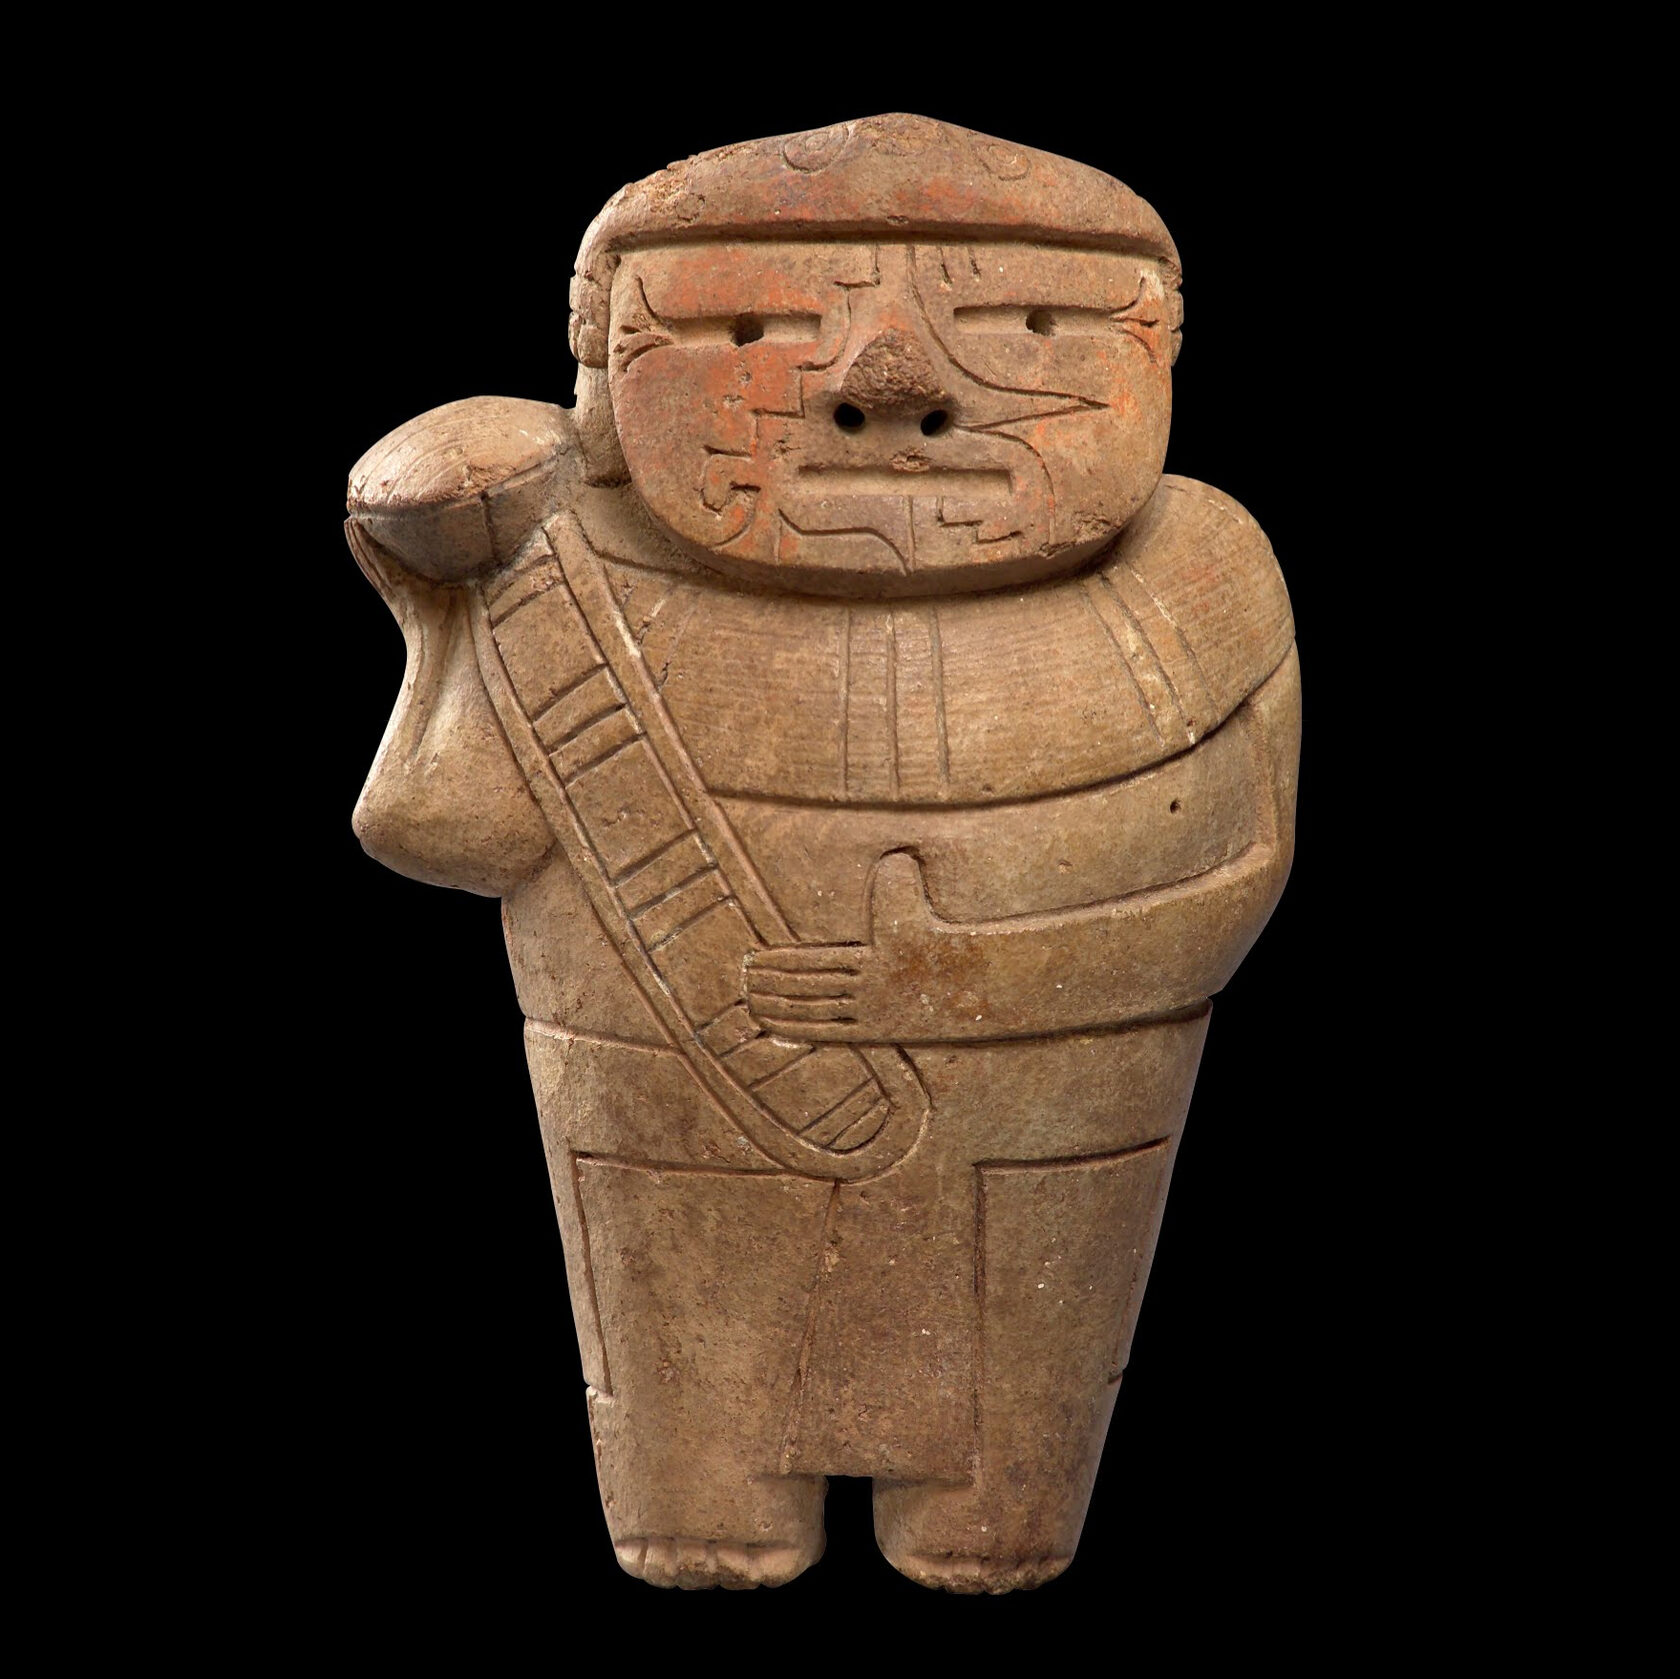 Фигура человека с трубой из раковины. Куписнике, 1500-500 гг. до н.э. Коллекция Художественный музей Лимы (MALI).